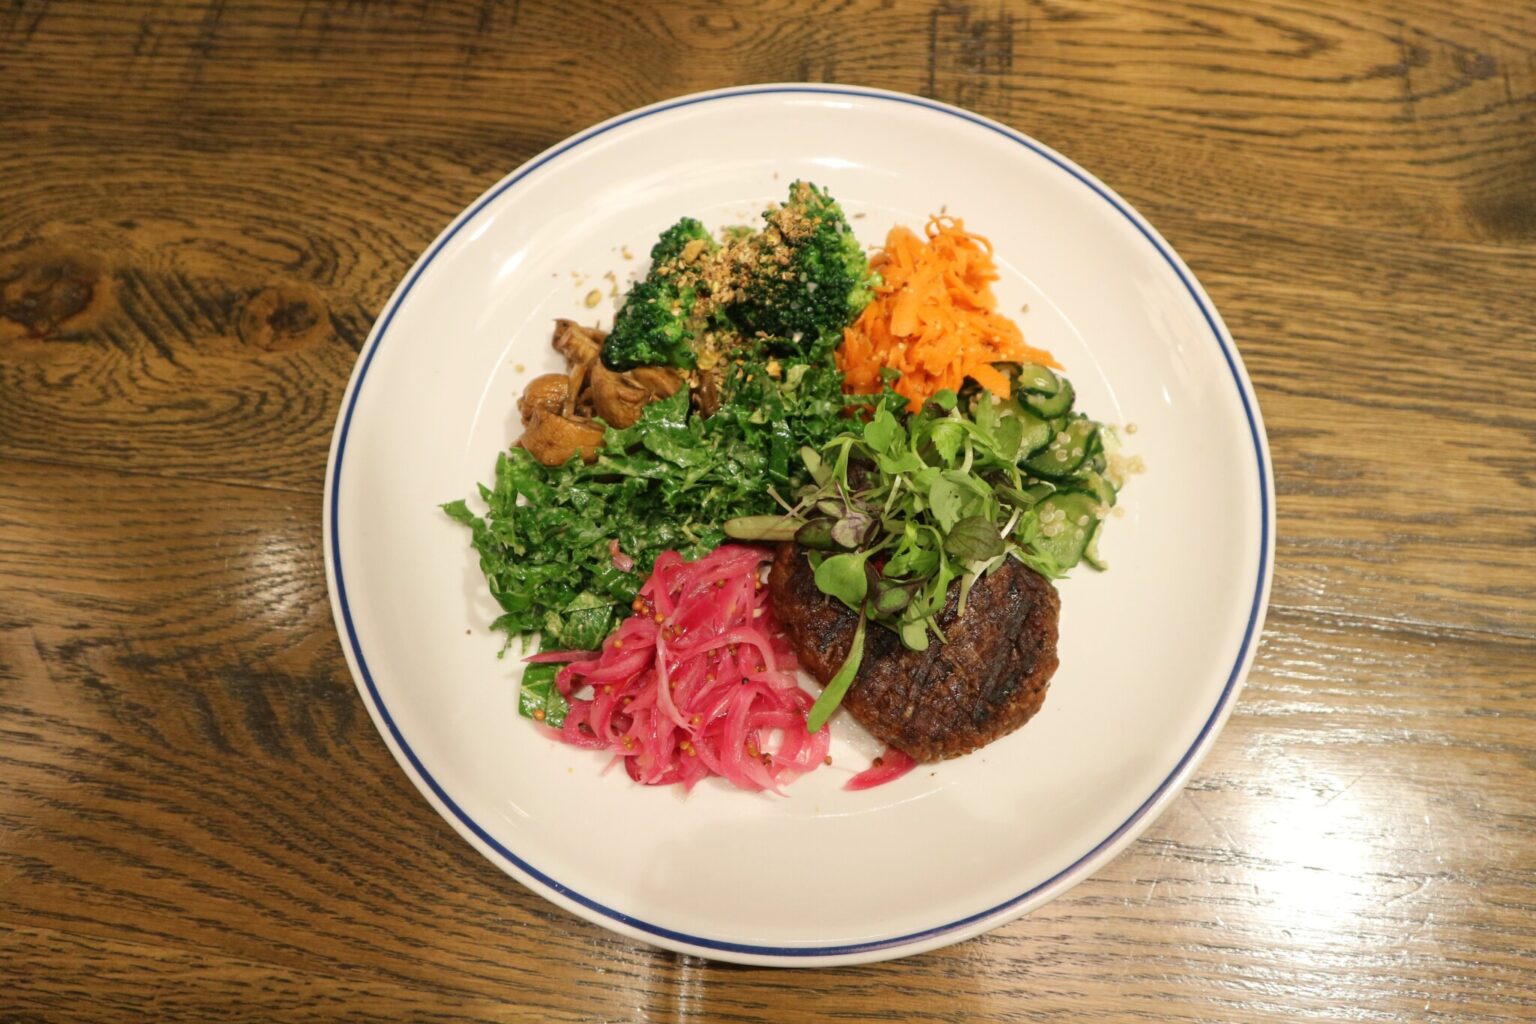 色とりどりの野菜と大豆ミートハンバーグを盛り合わせた、「ゼロミート」のサラダ「ブッダボウル」1,650円。